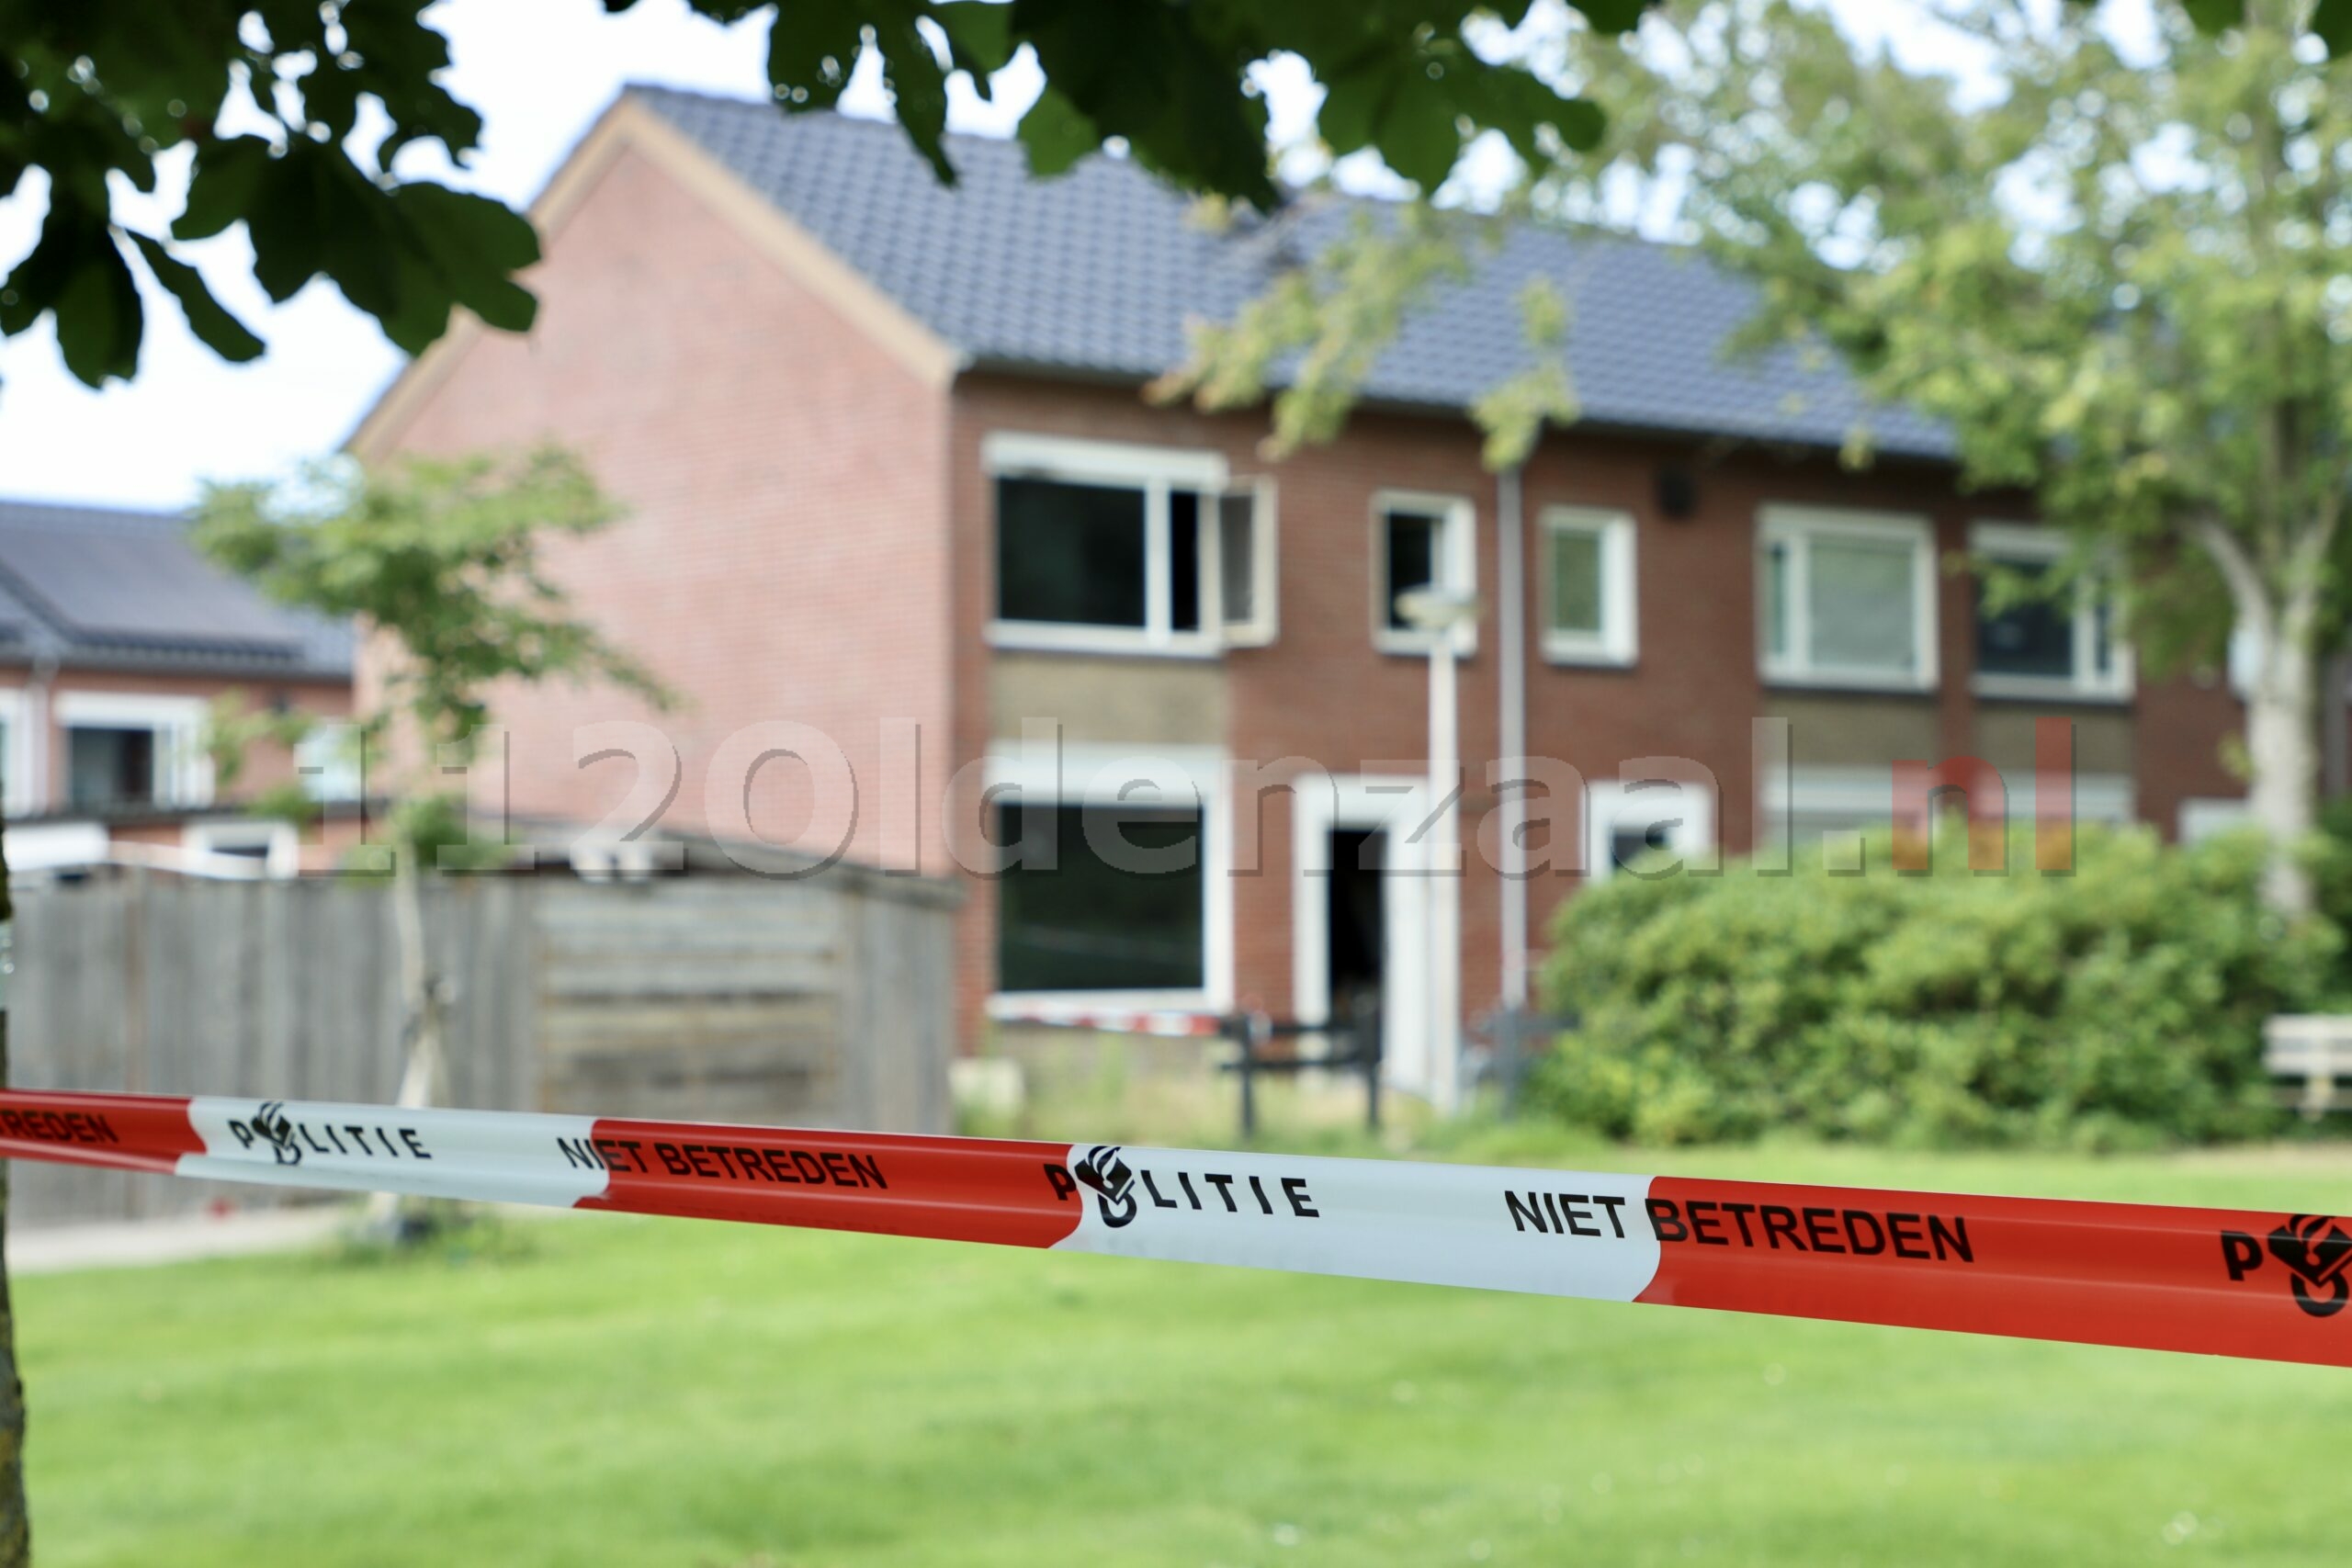 Woning in Oldenzaal zwaar beschadigd na brand; Forensische Opsporing doet onderzoek